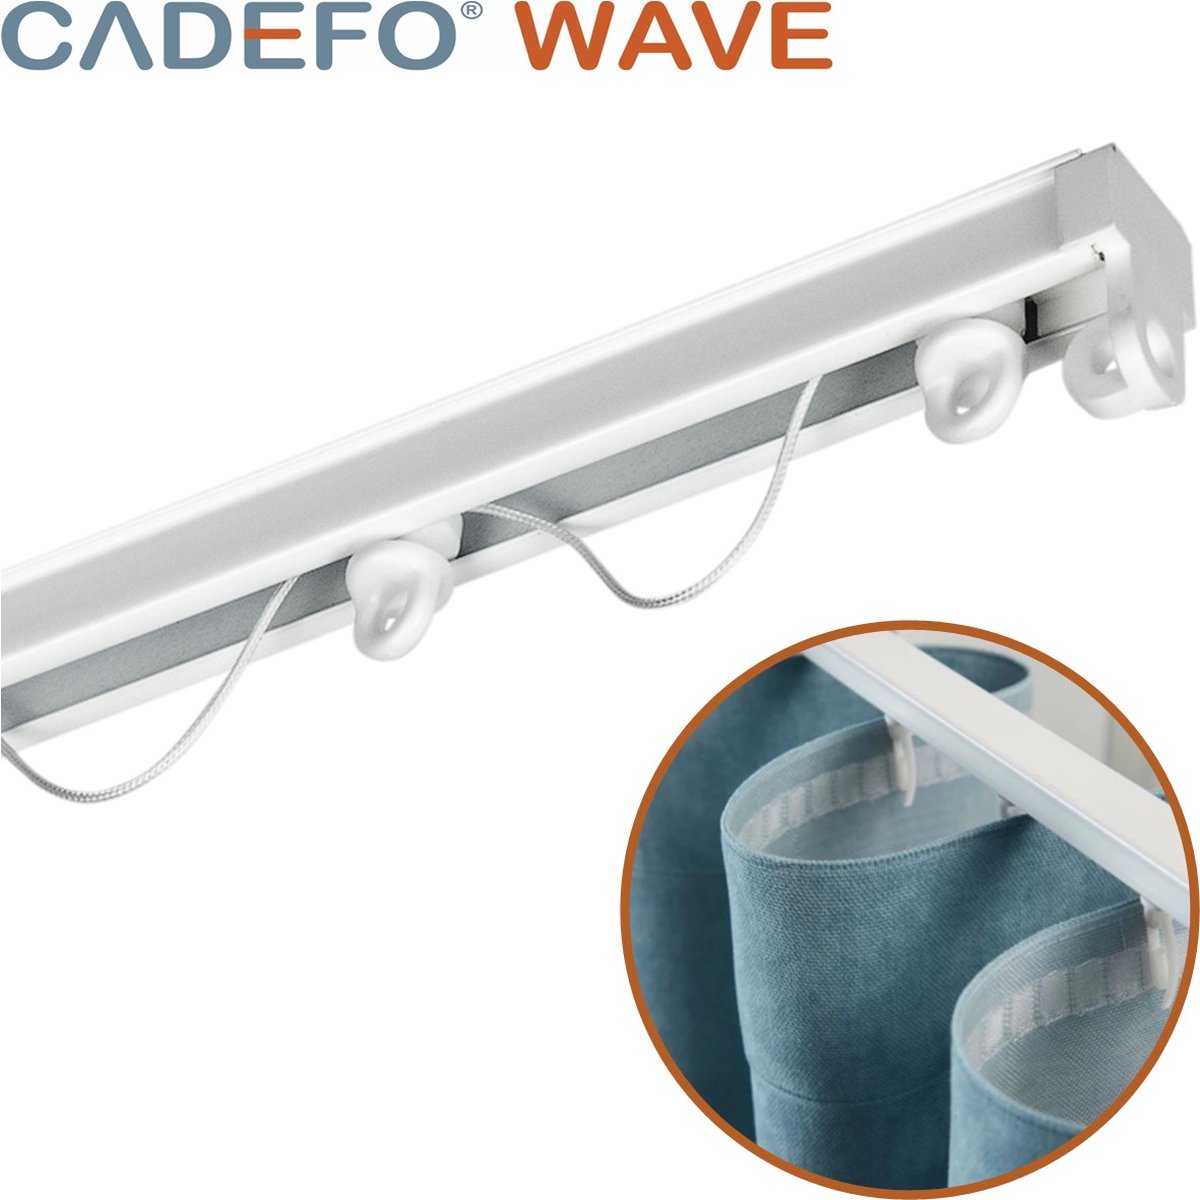 CADEFO WAVE (151 - 200 cm) Gordijnrails - Compleet op maat! - UIT 1 STUK - Leverbaar tot 6 meter - Plafondbevestiging - Lengte 195 cm